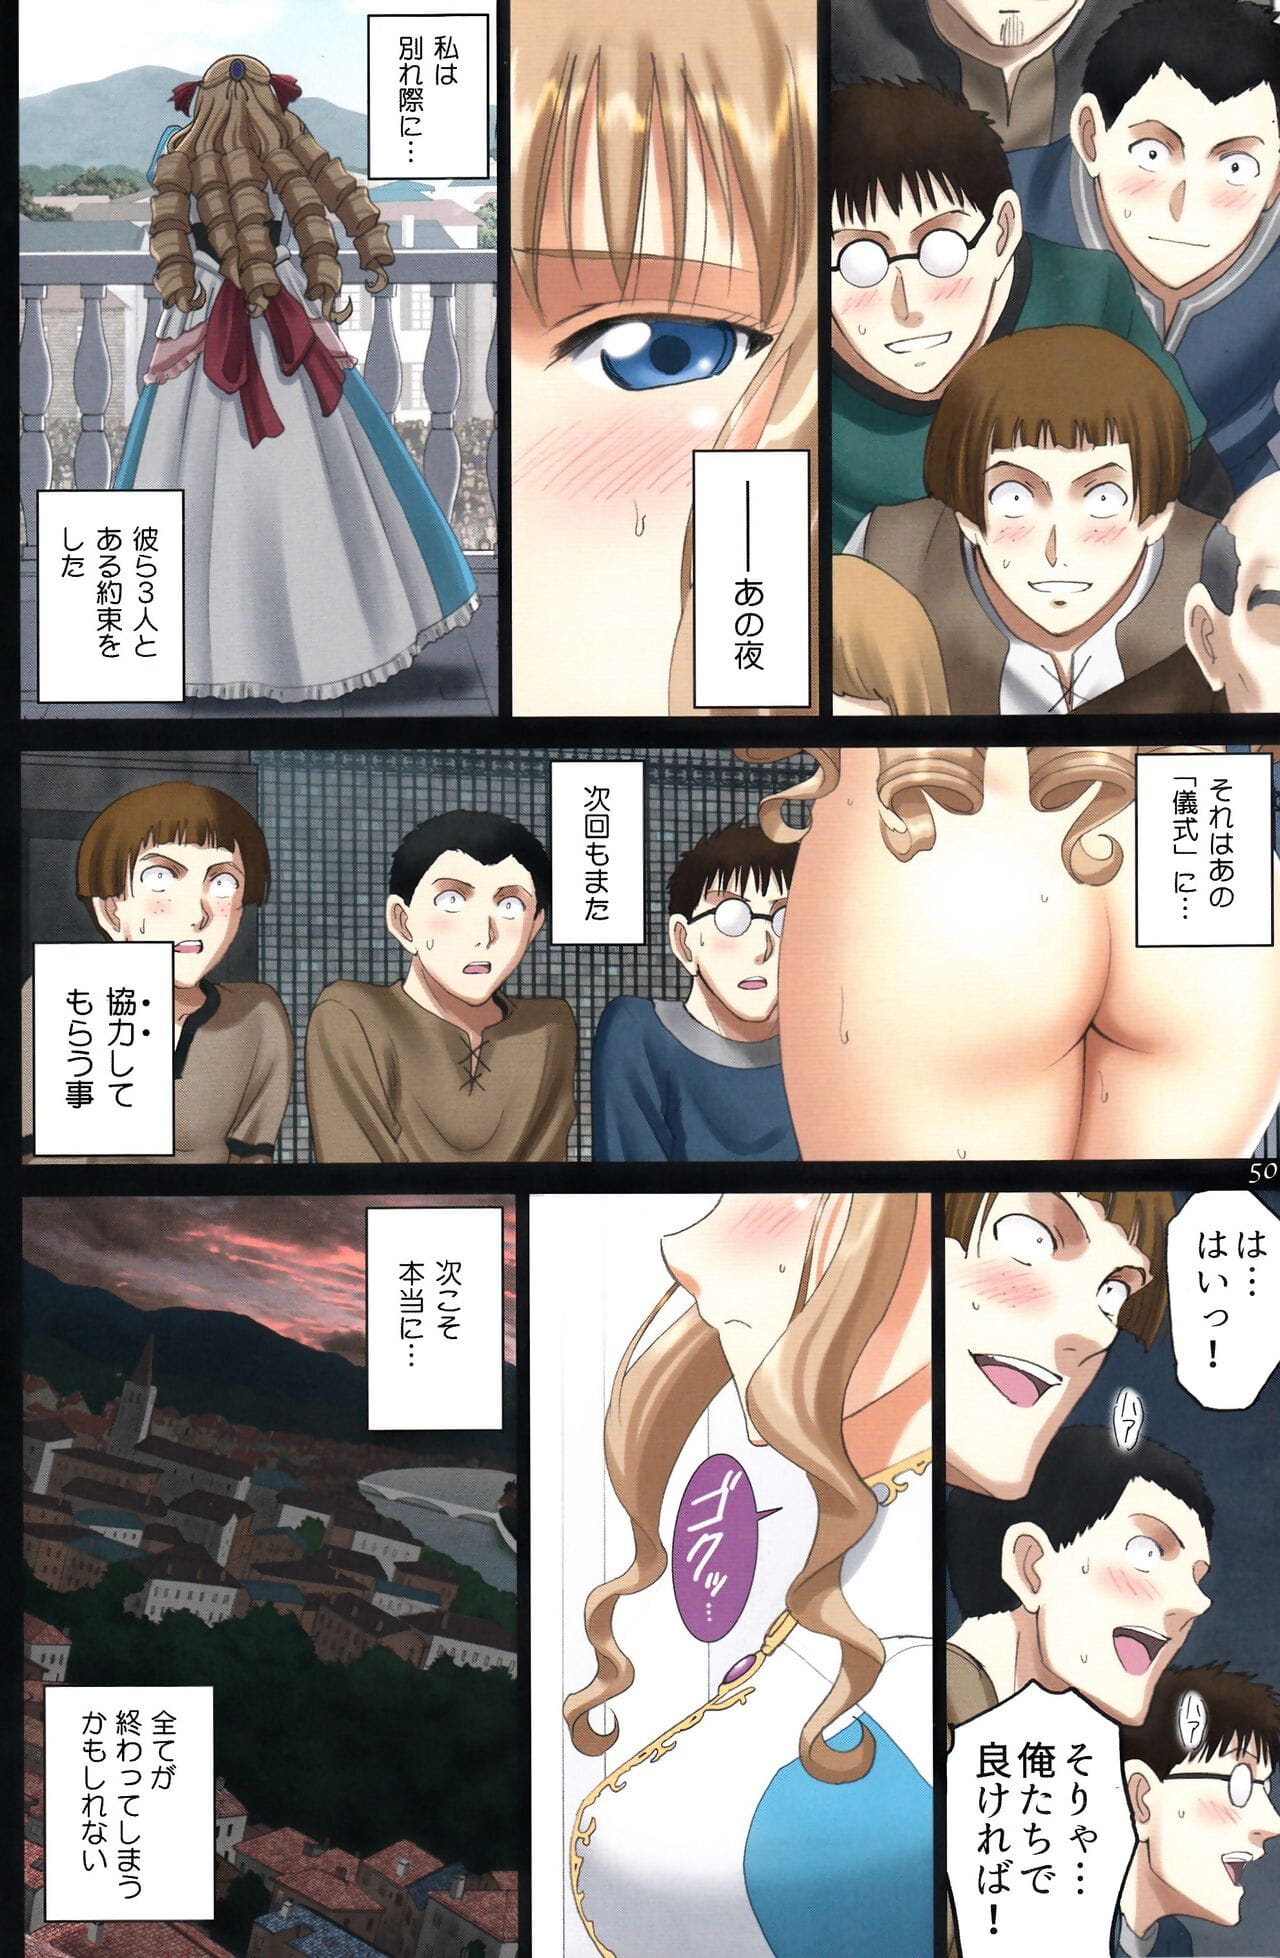 Roshutsu Otome Fantasy Oujo wa inbina mi rare makuri ~Yunaria Fon Vitoria ~ FINAL - part 2 page 1